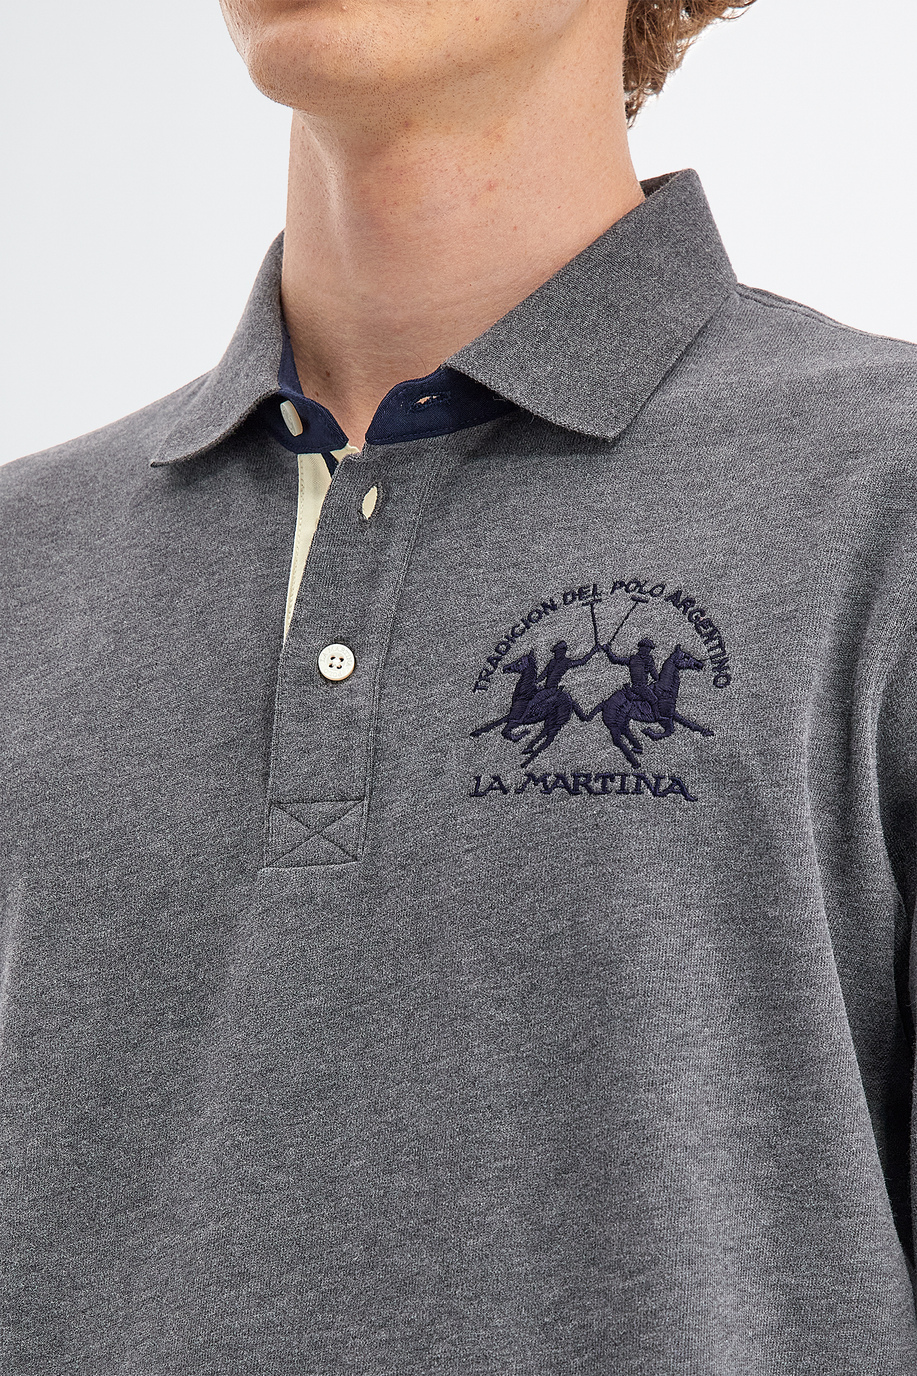 Herren-Poloshirt aus Baumwolljersey mit langen Ärmeln - Geschenke unter €150 für ihn | La Martina - Official Online Shop